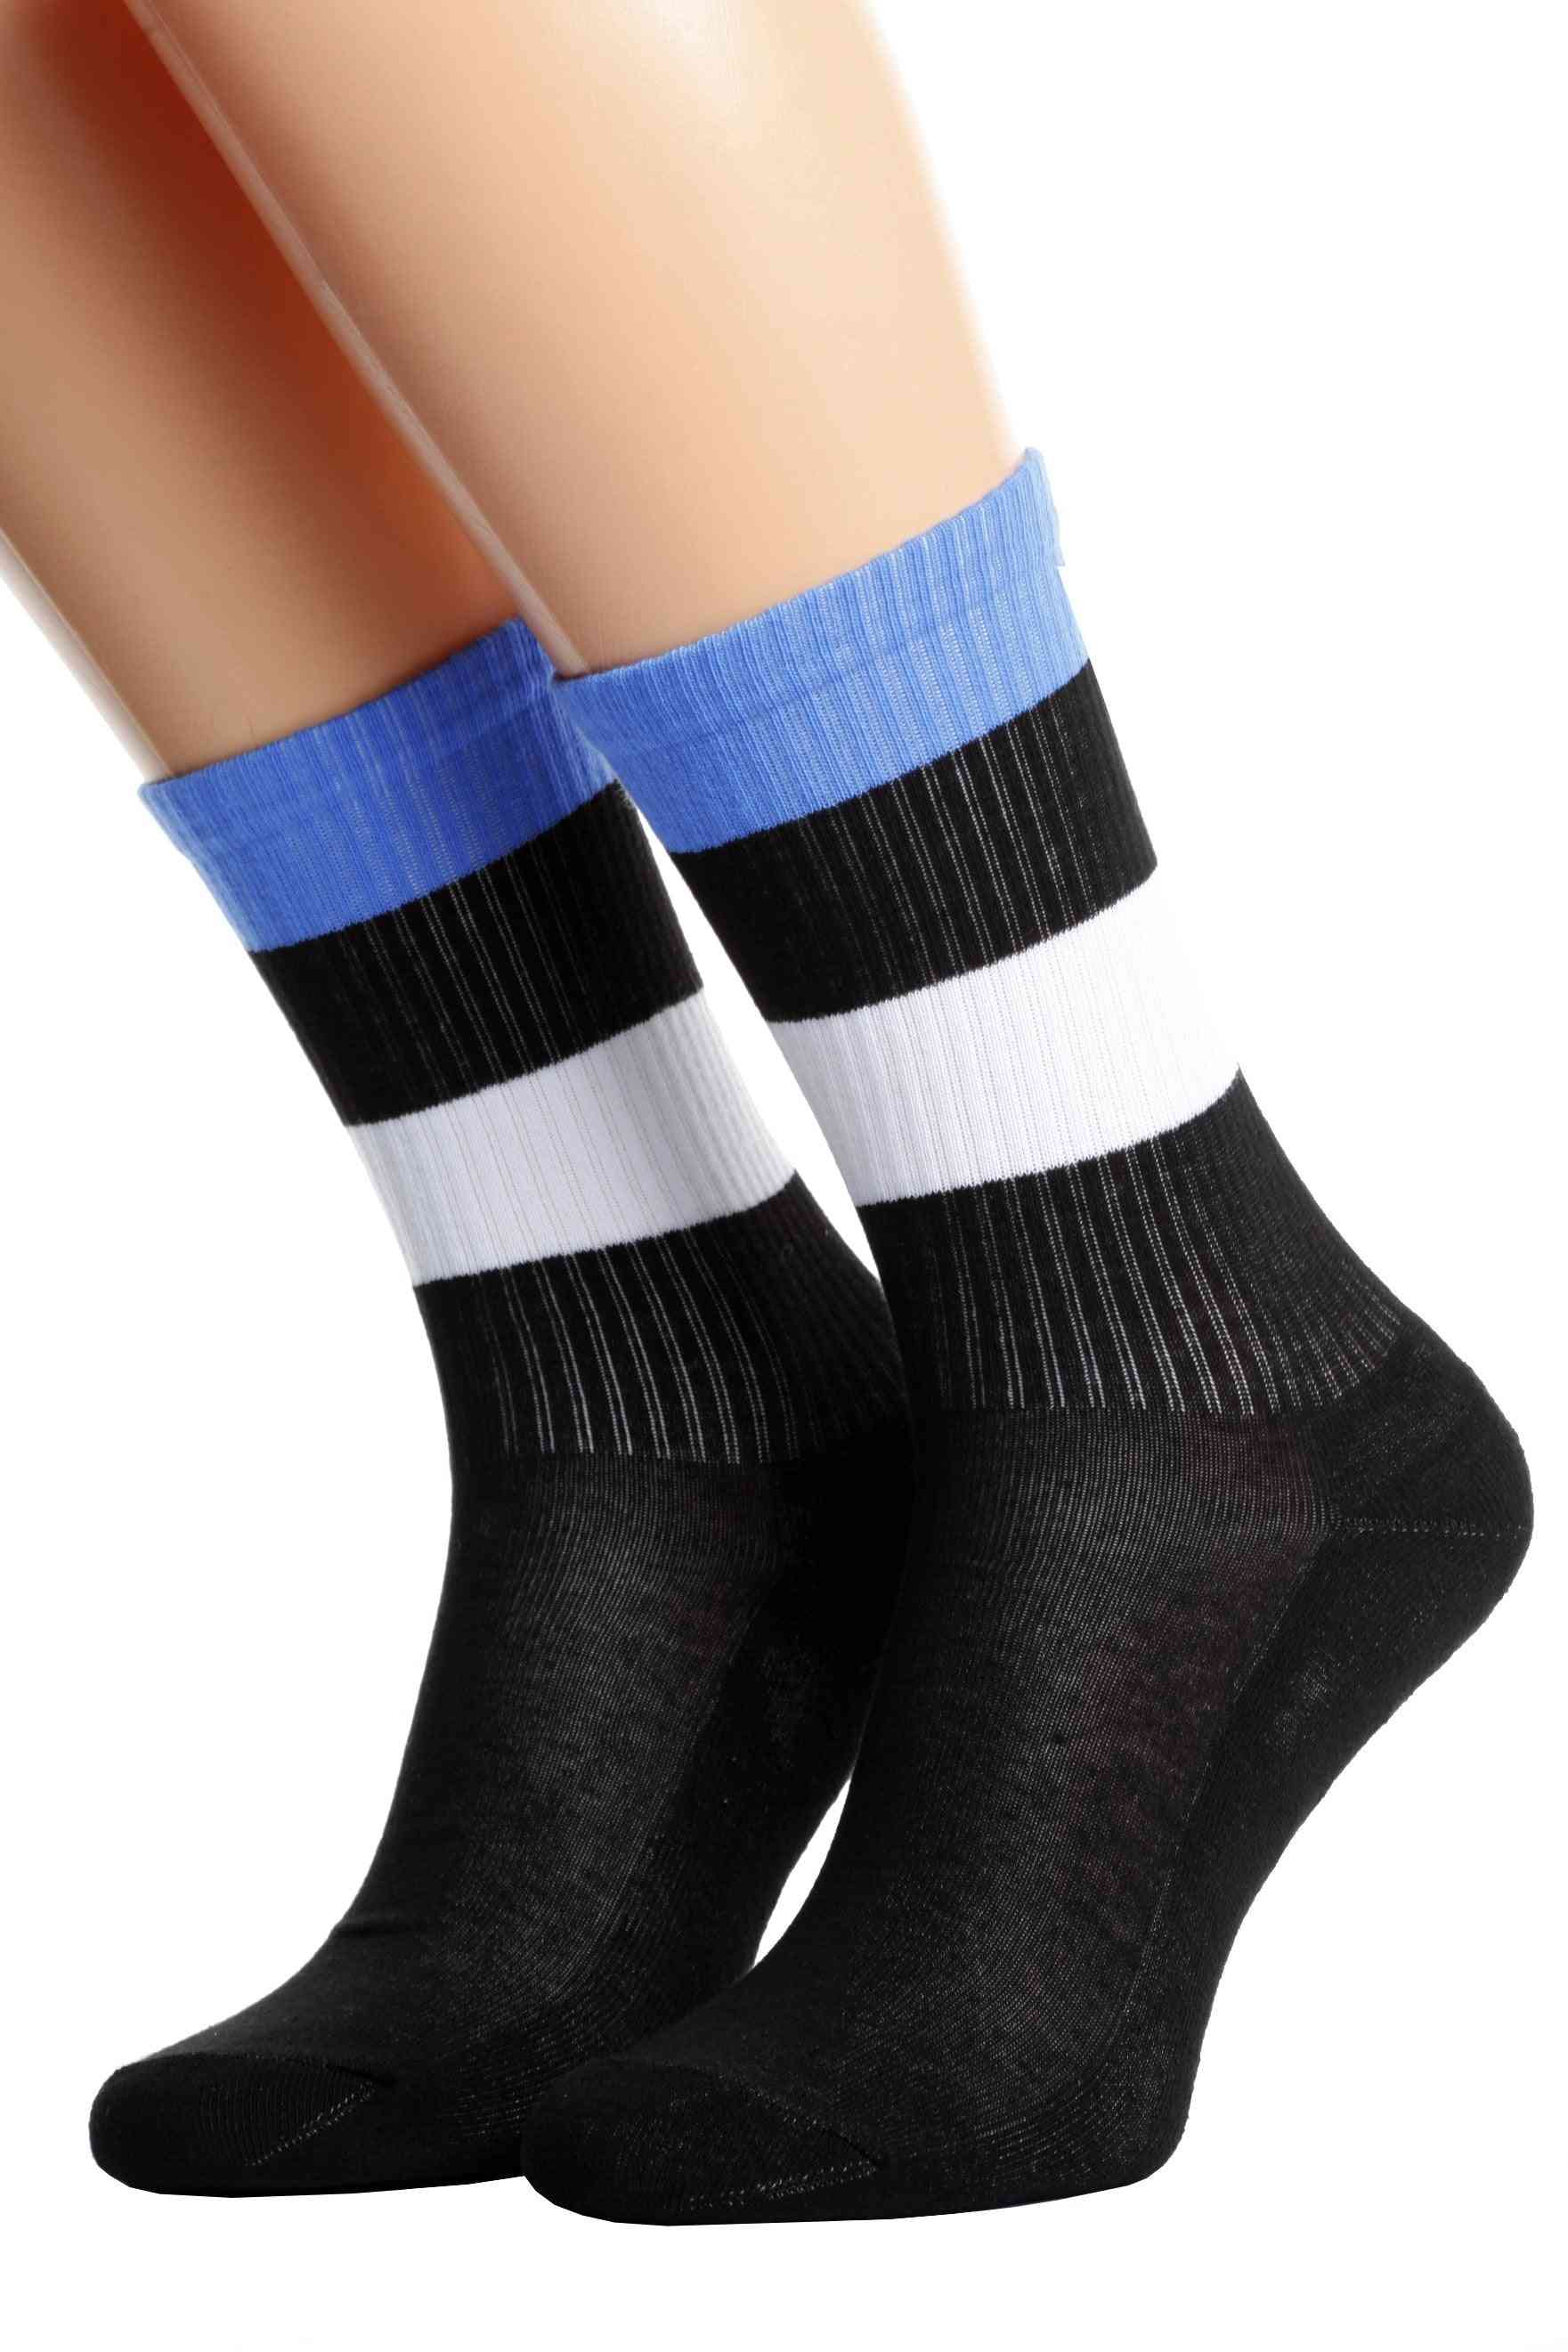 Flag Socks For Men And Women